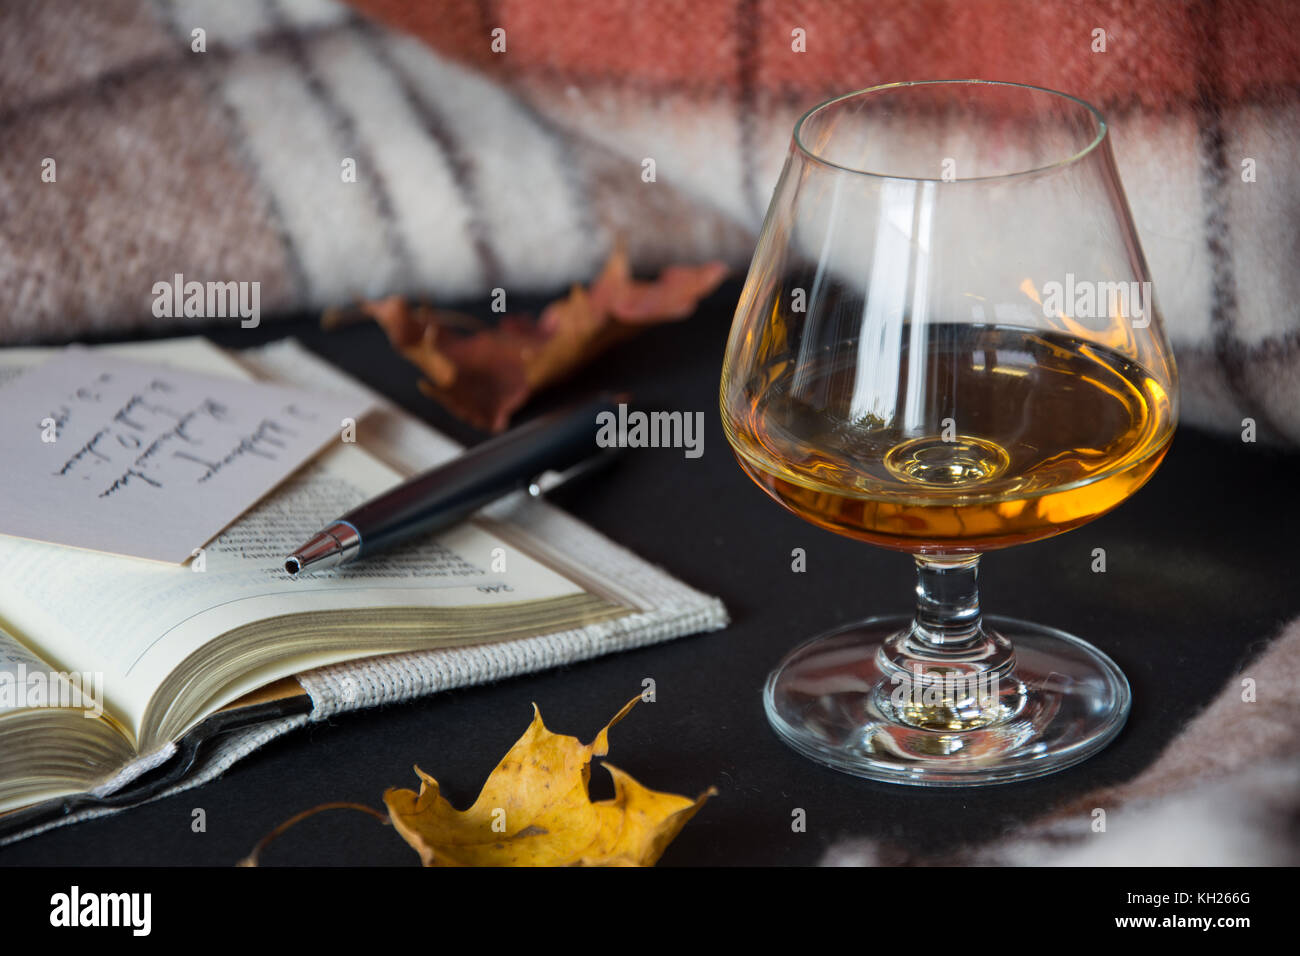 Un verre d'alcool ambré avec un livre ouvert, des feuilles sèches, une couverture chaude et bille en arrière-plan Banque D'Images